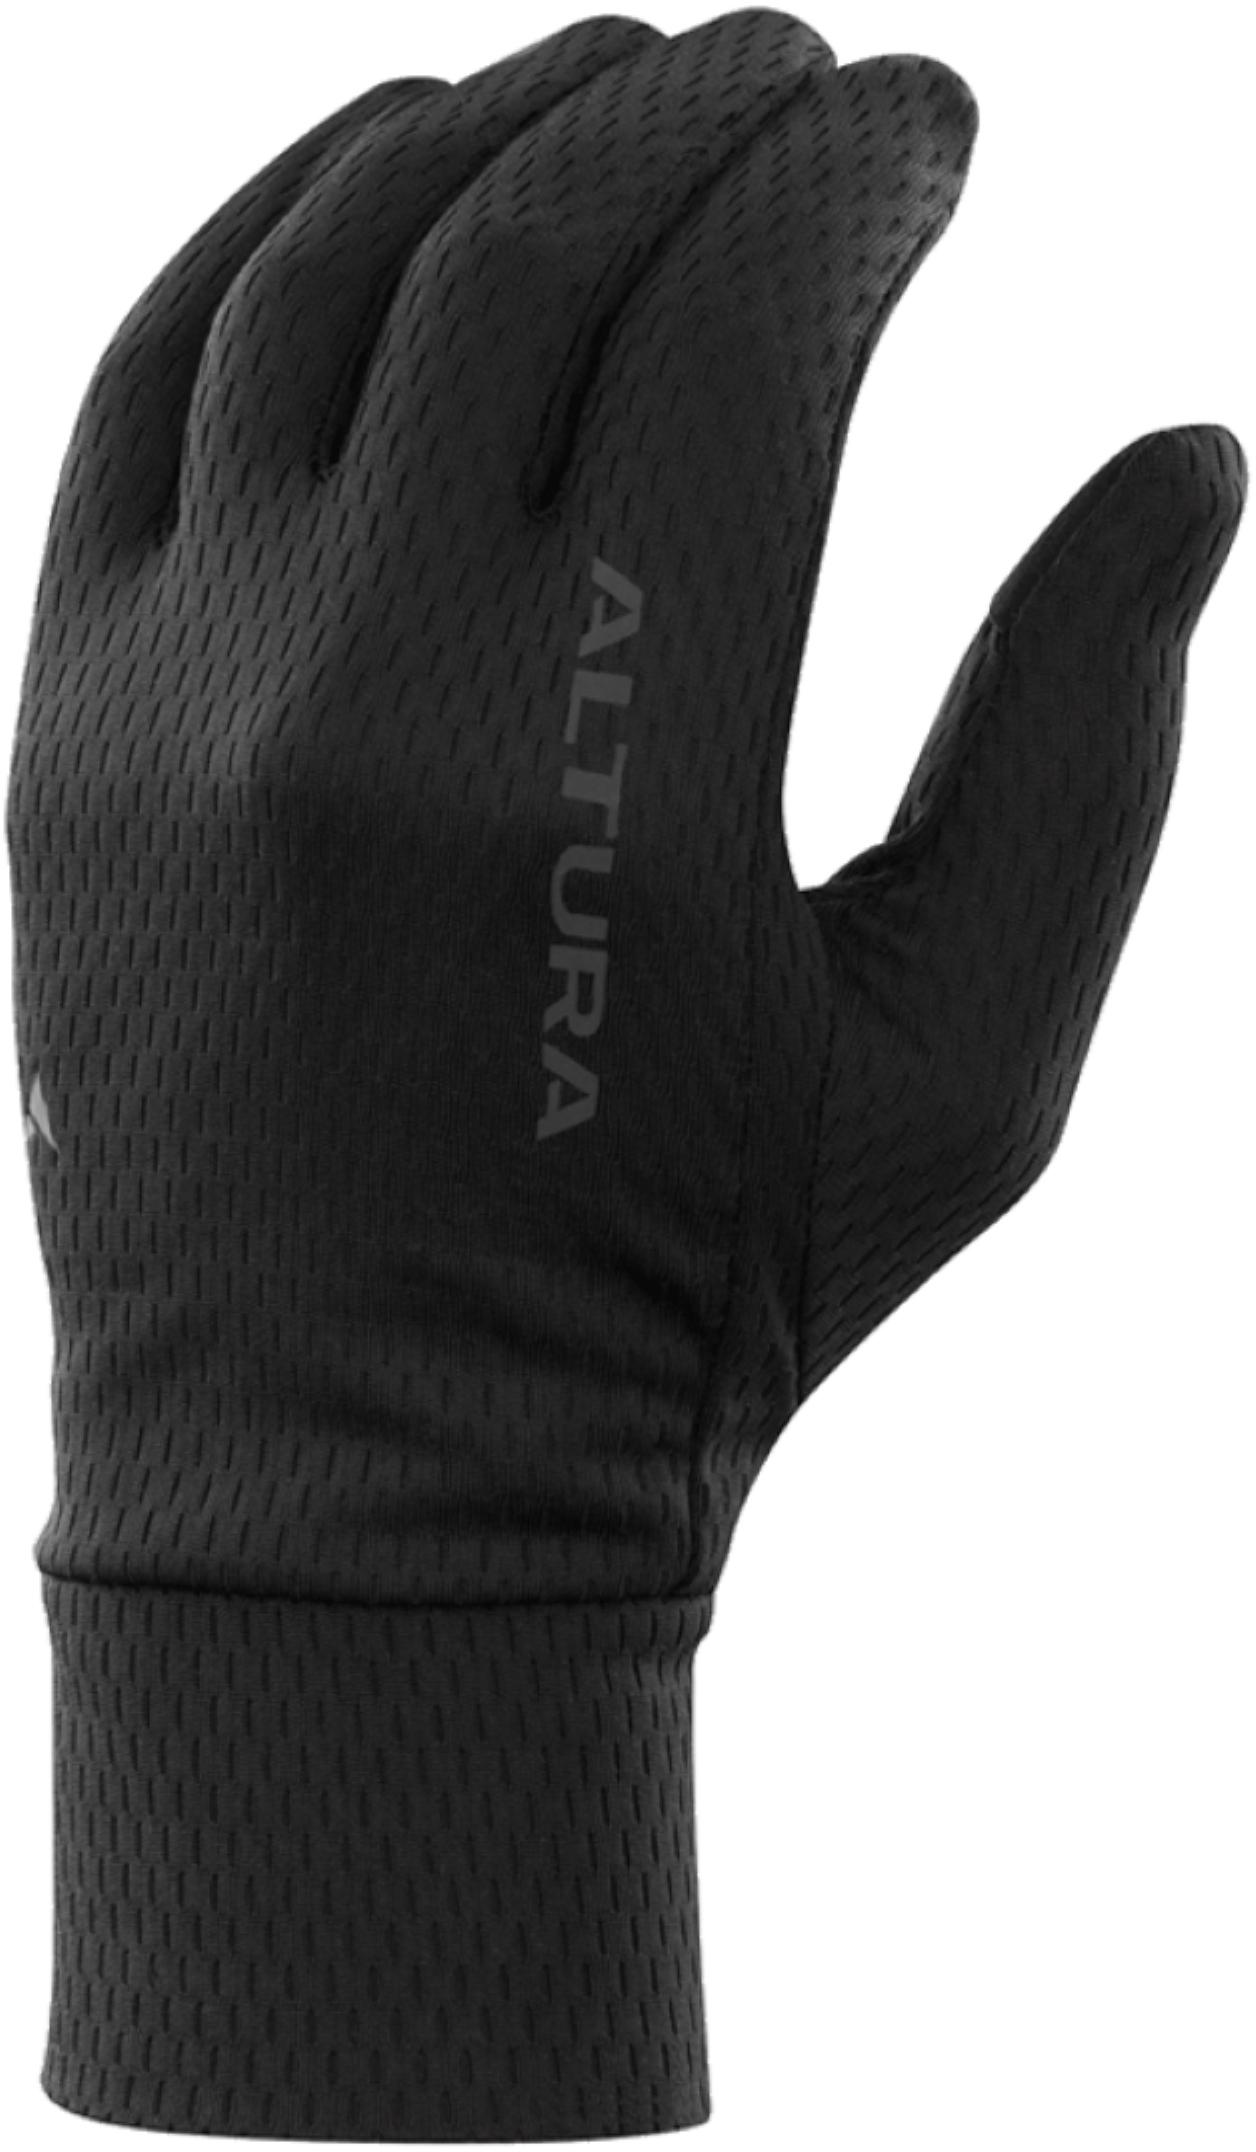 Altura liner gloves